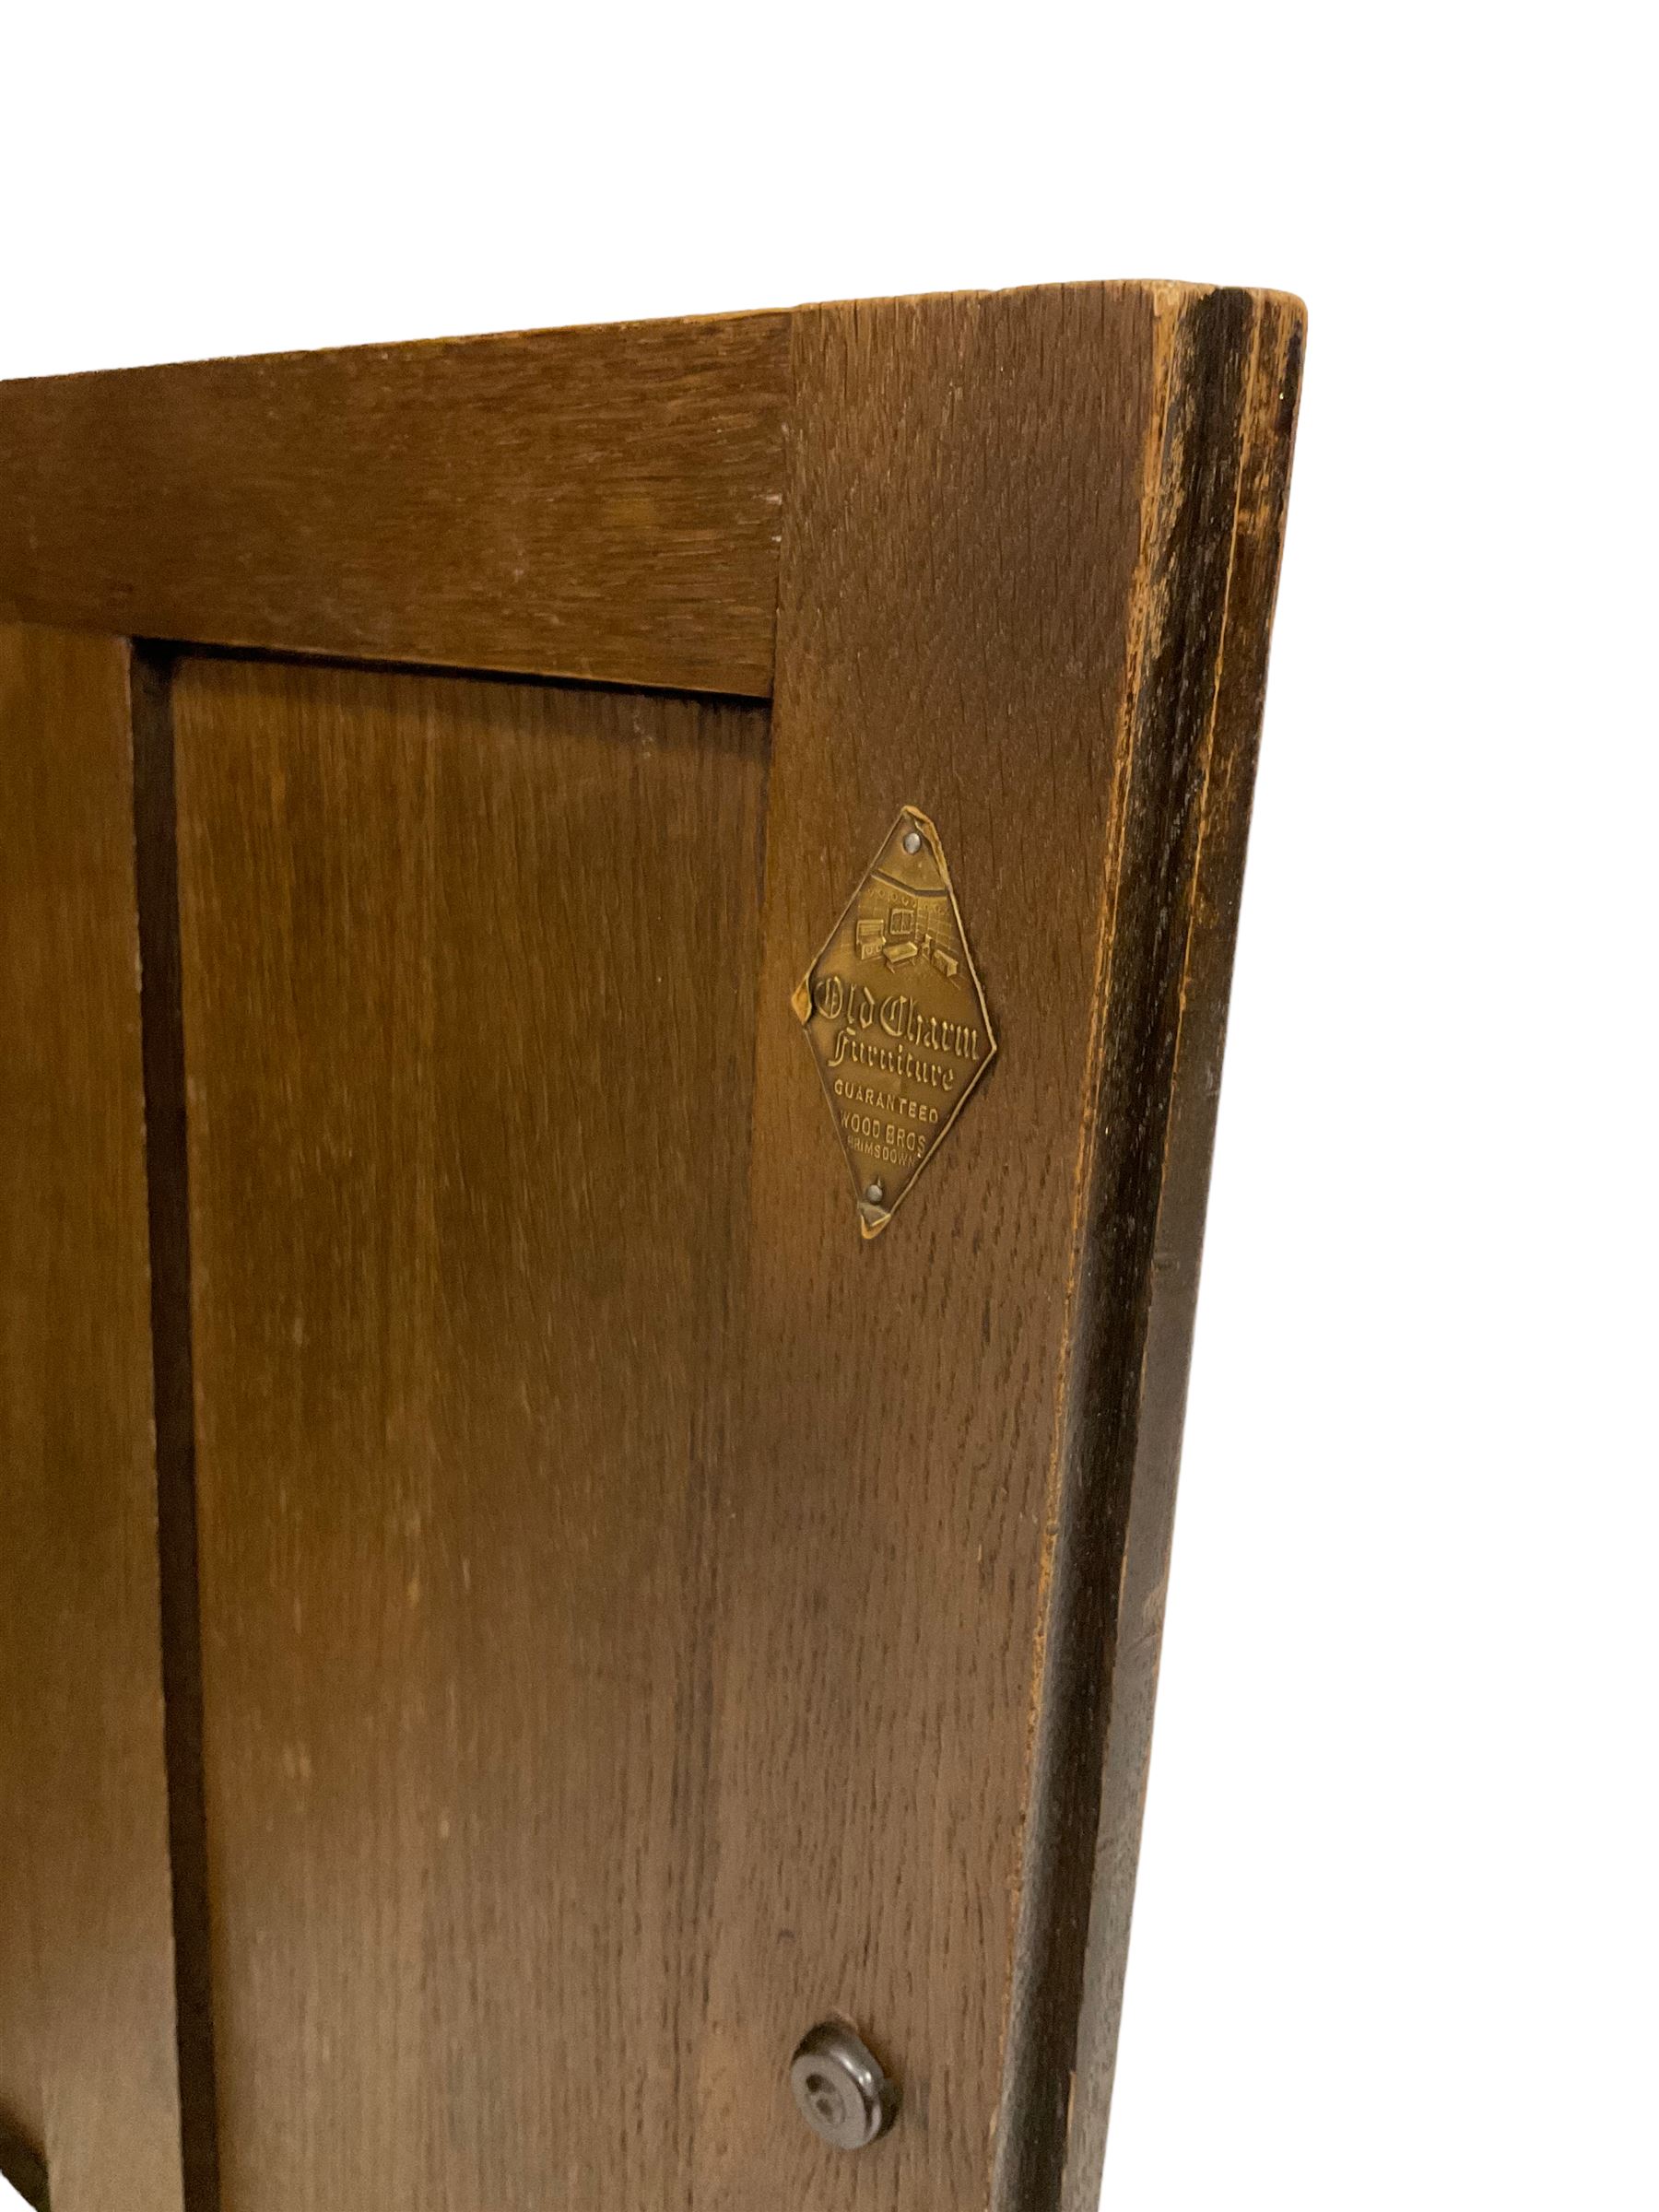 Early 20th century oak dresser - Image 2 of 5